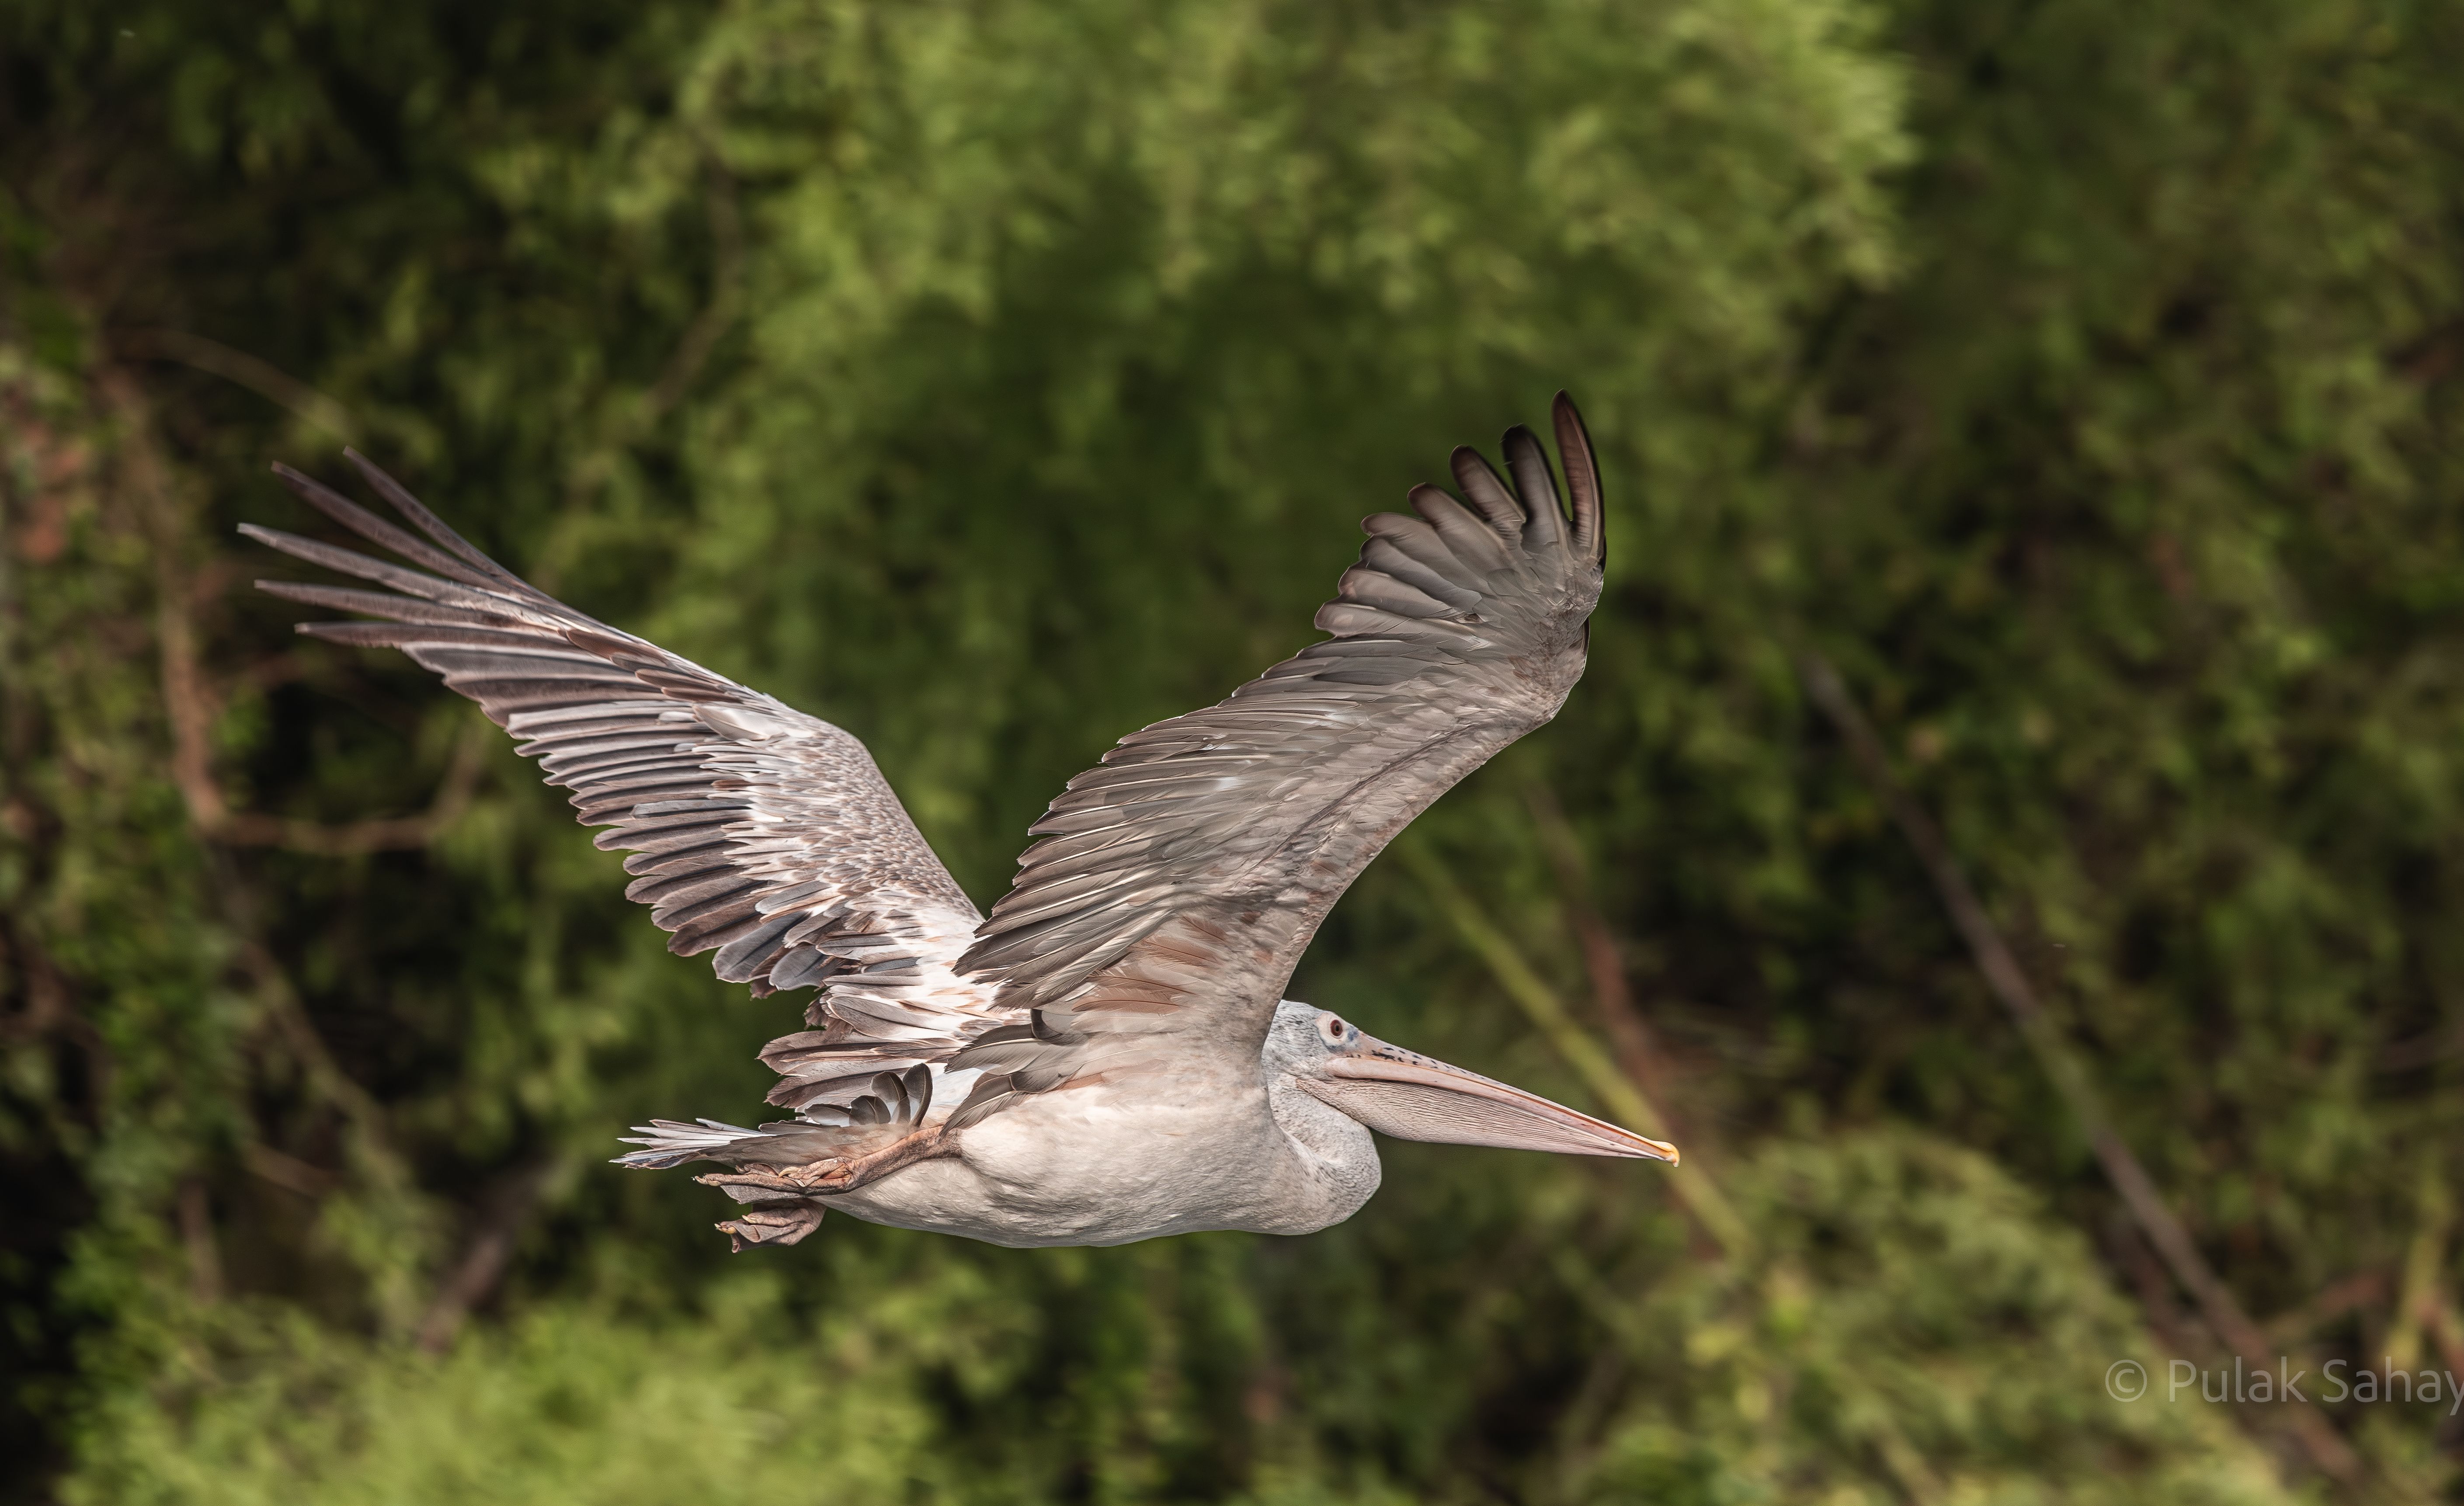 Pelican flying